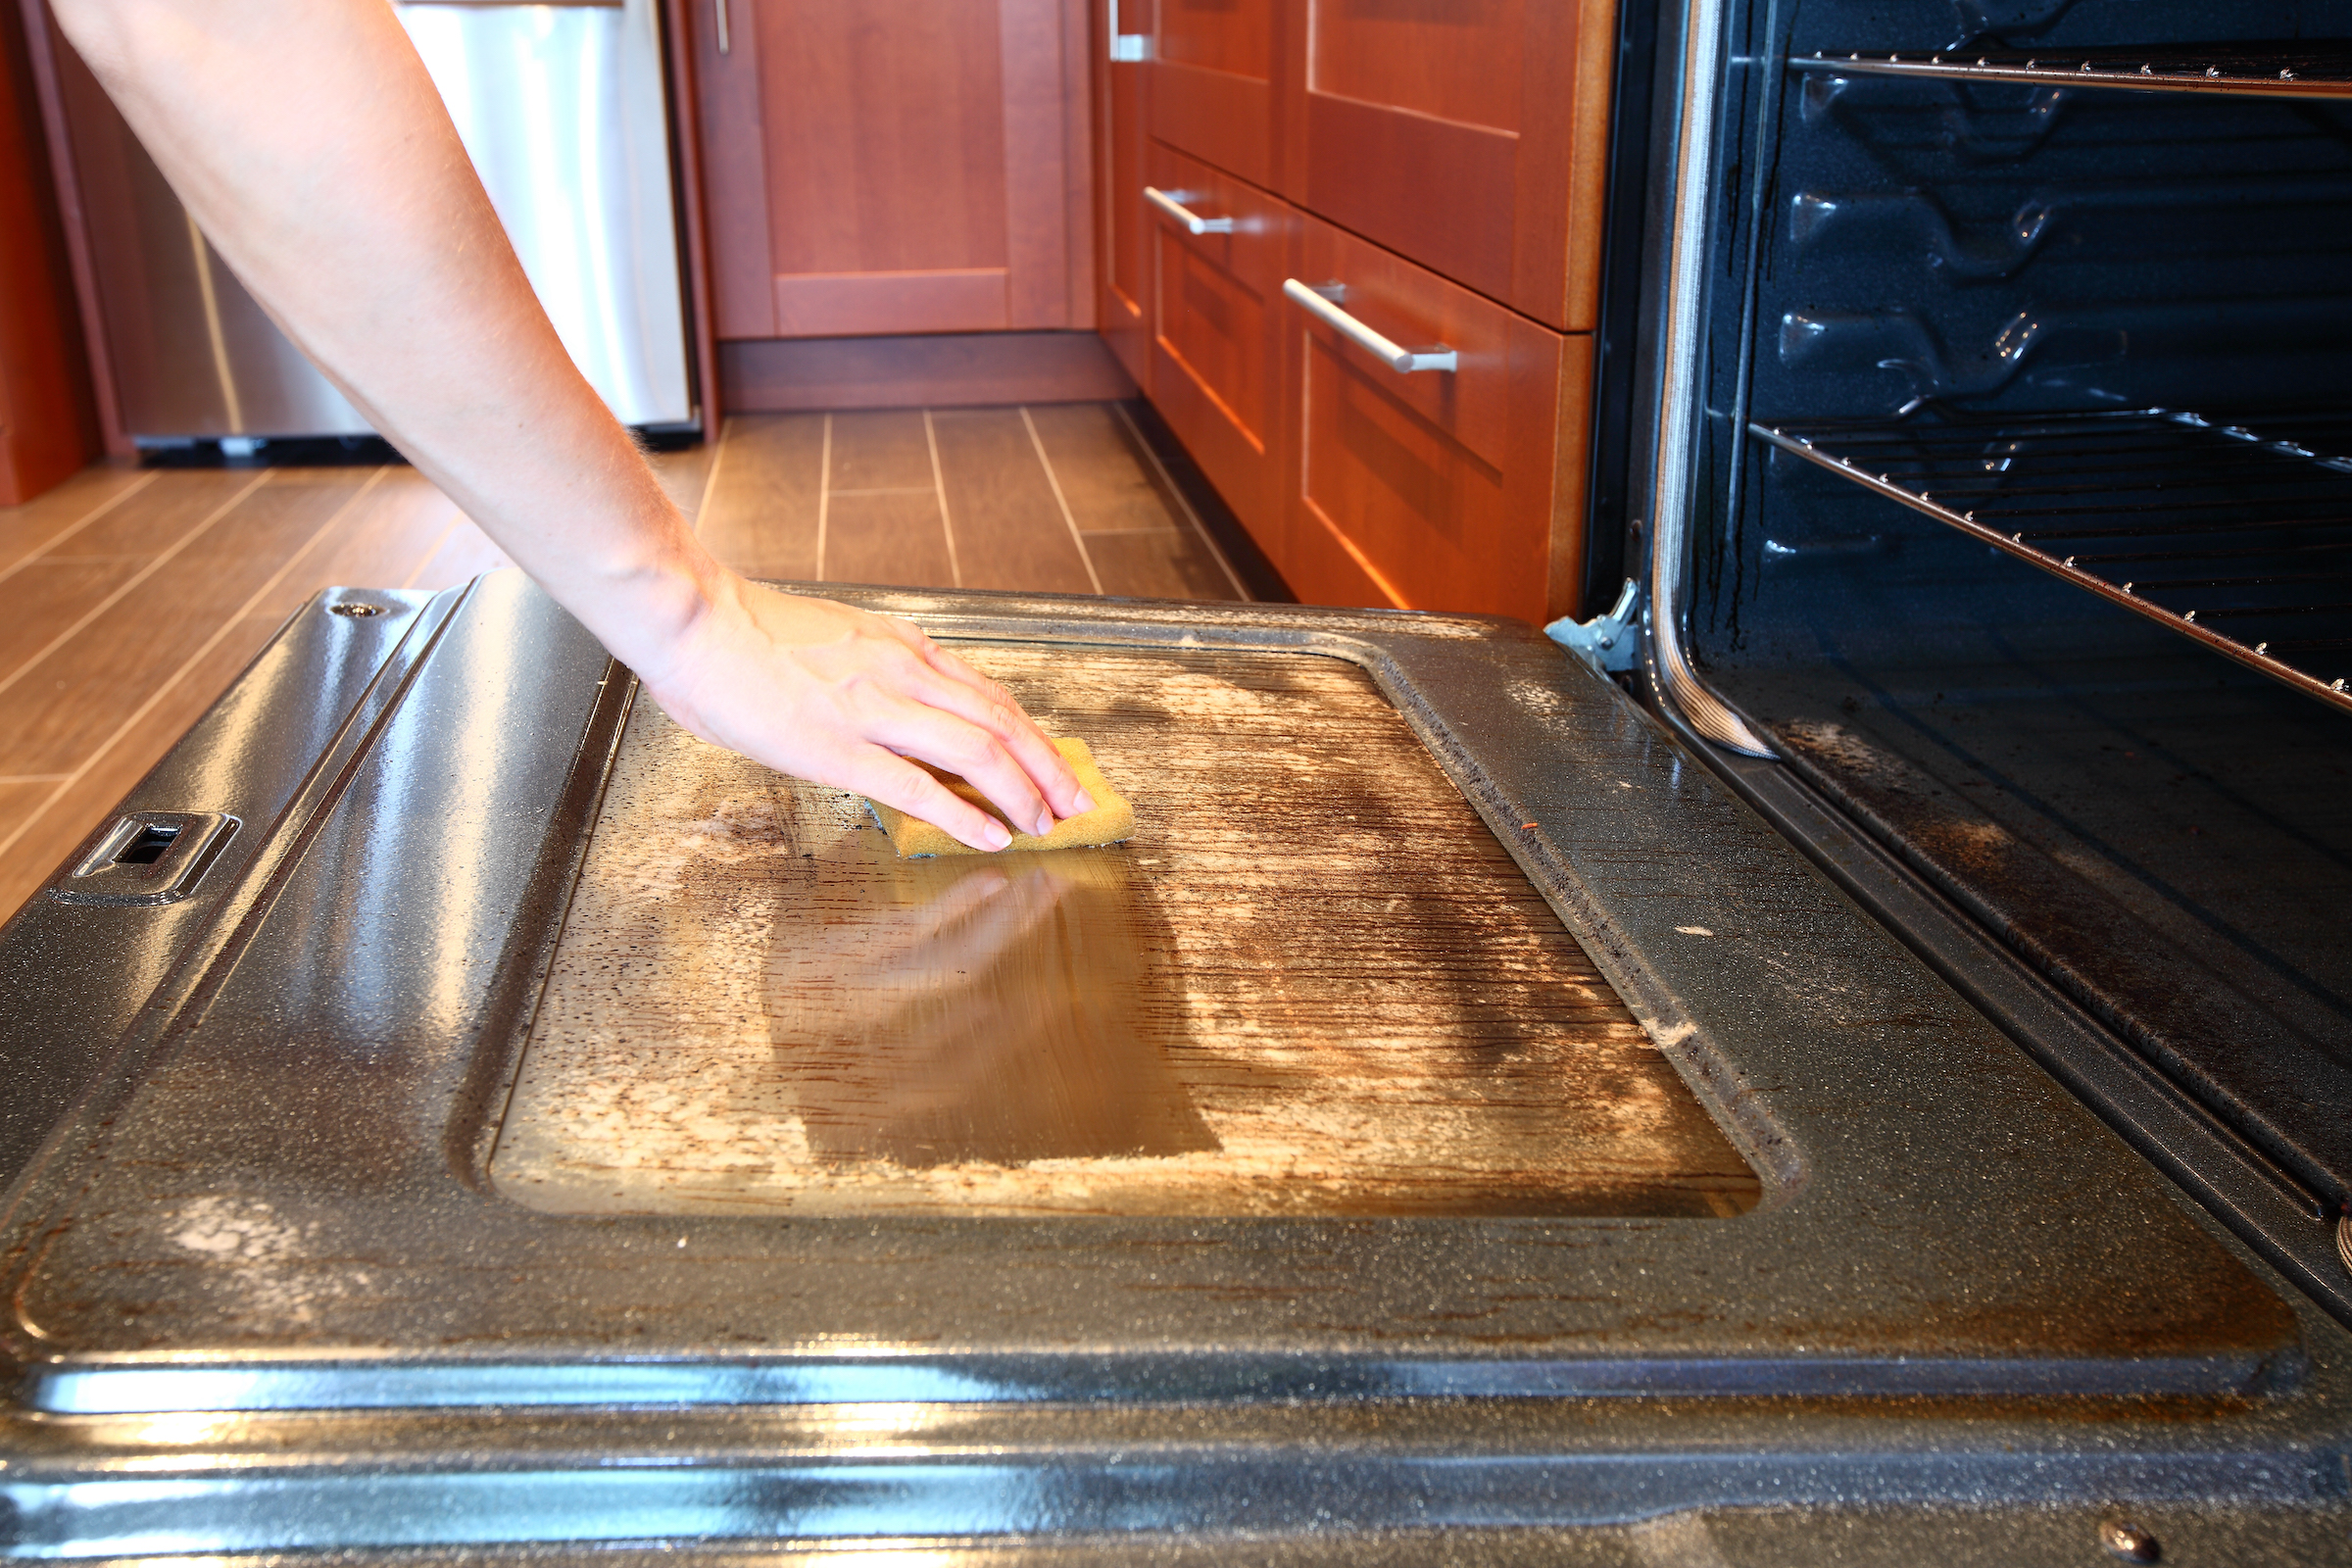 El truco infalible para limpiar el horno sin esfuerzo ni productos químicos